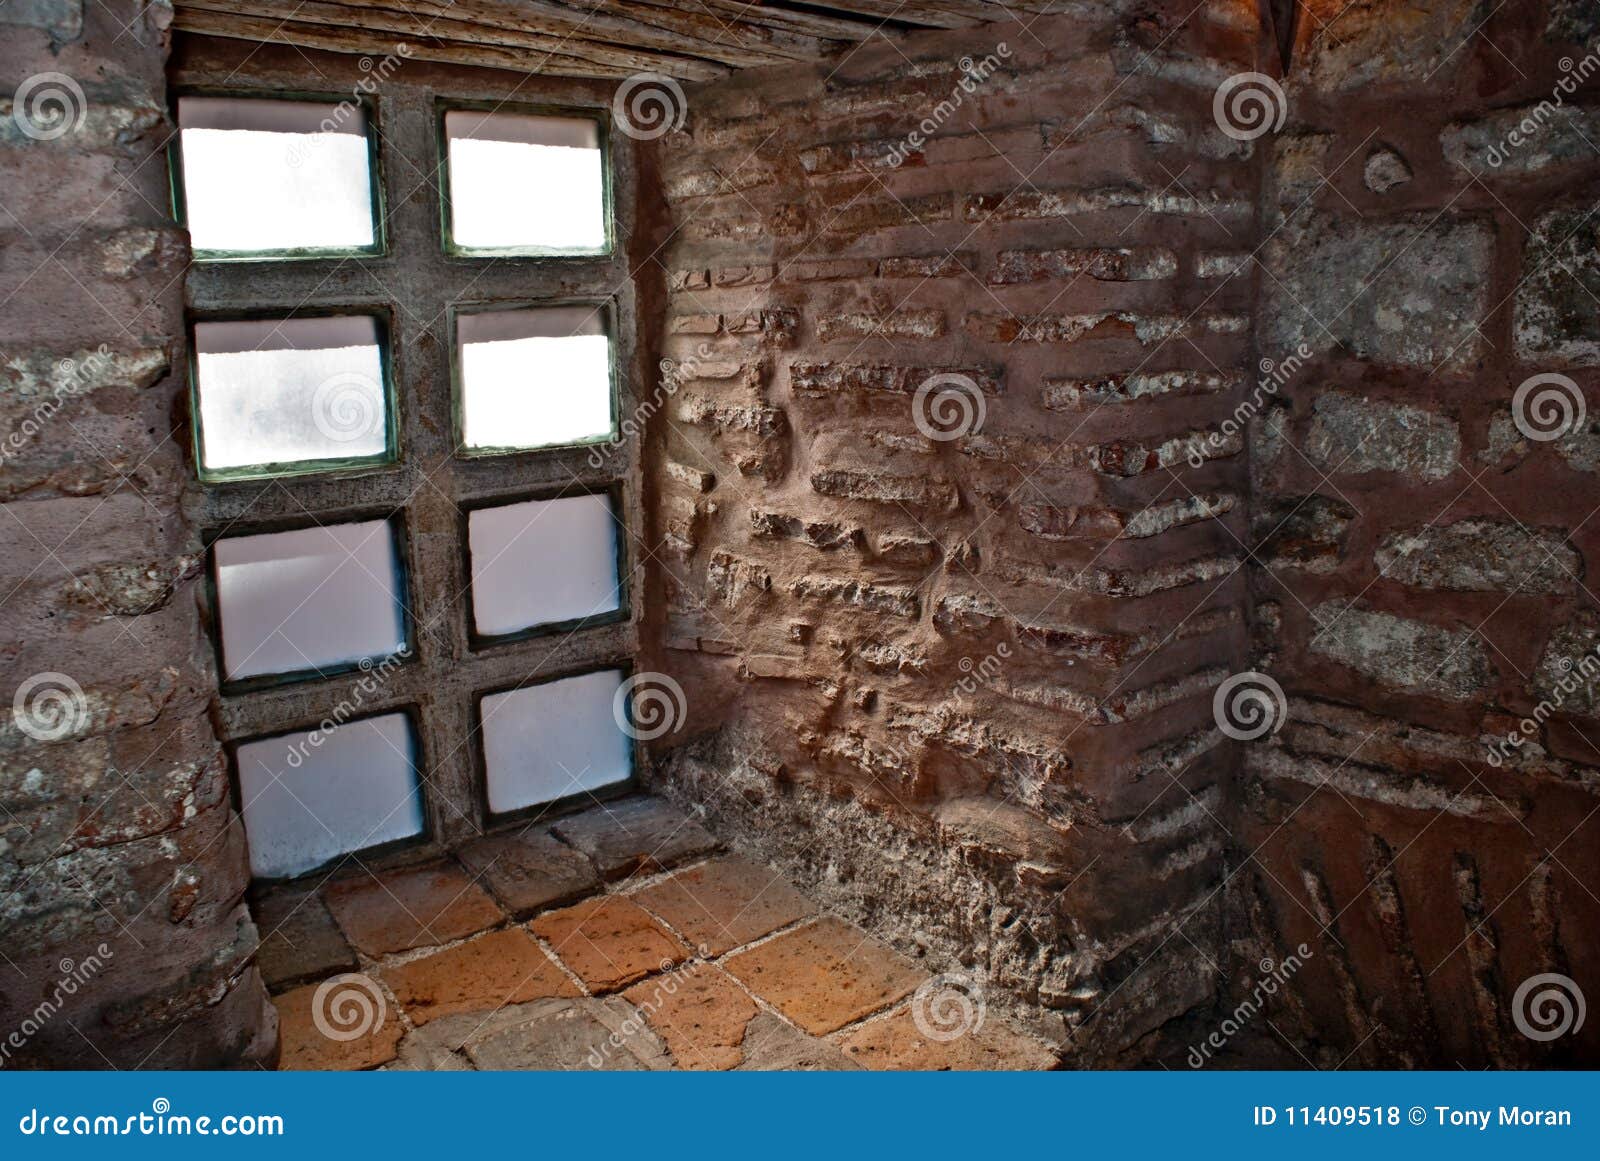 ancient-castle-window-11409518.jpg